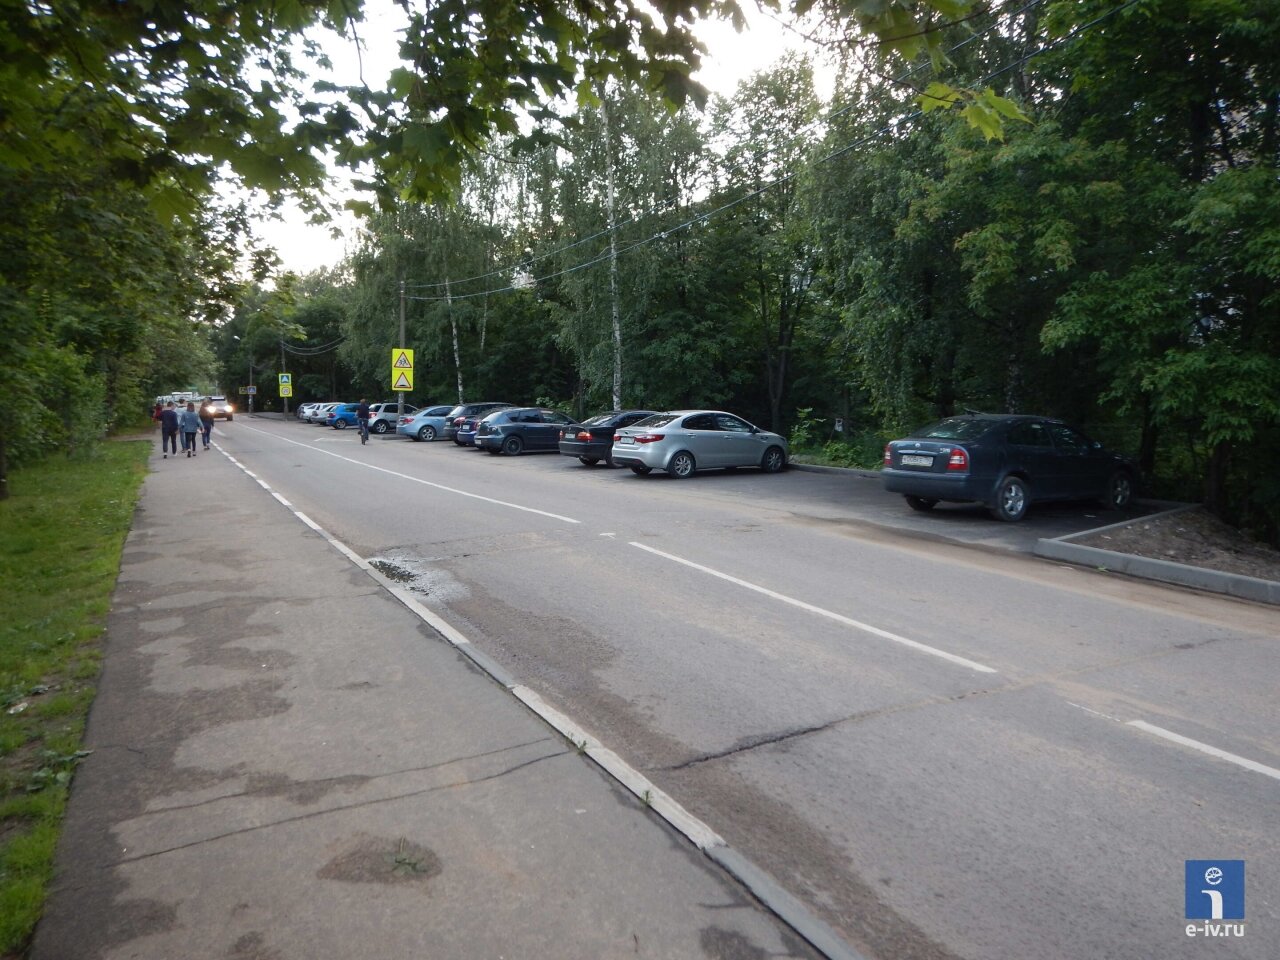 Парковка для автомобилей возле гимназии №3, Ивантеевка, Московская область